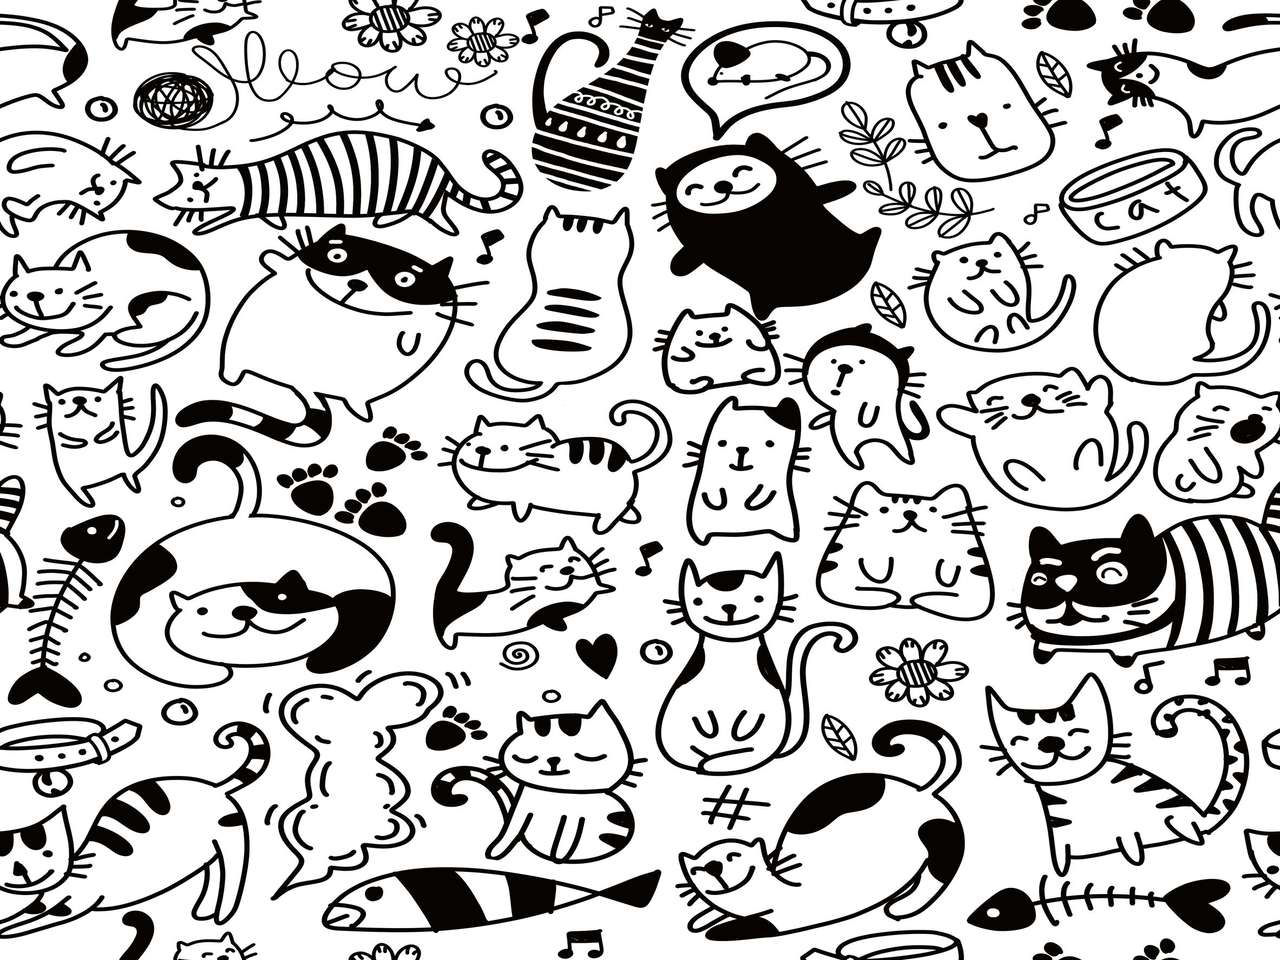 Doodle cats online puzzle